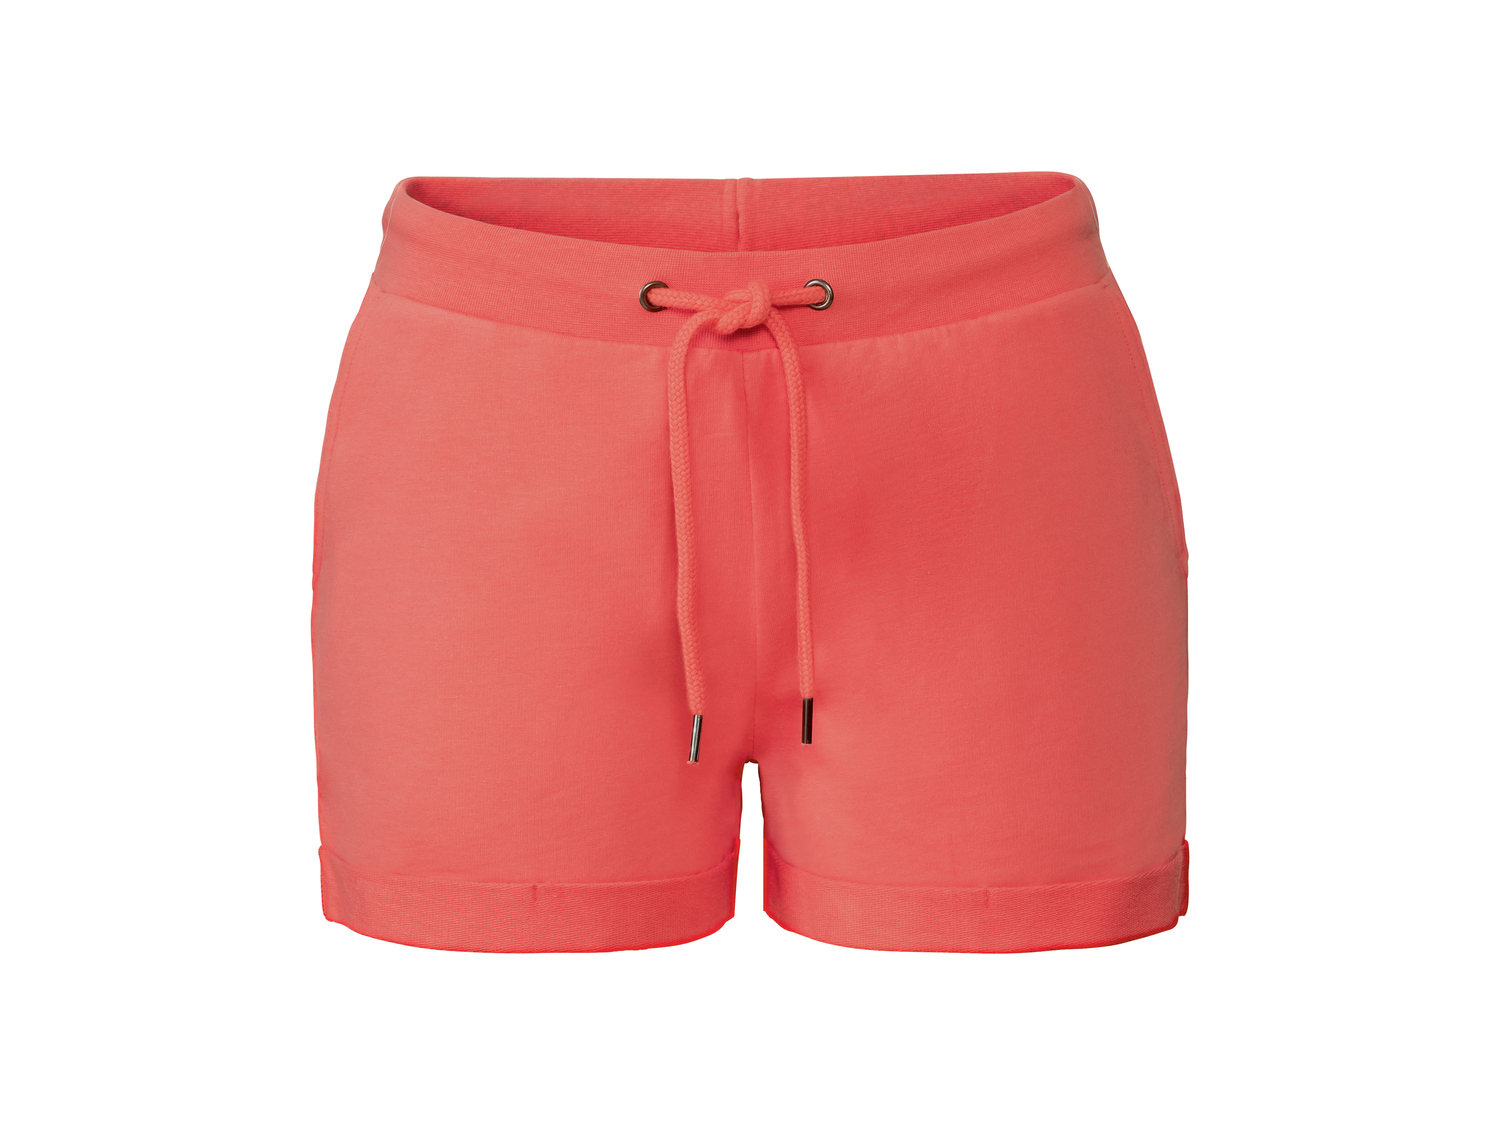 Shorts da donna Esmara, prezzo 4.99 &#8364; 
Misure: S-L
Taglie disponibili

Caratteristiche

- ...